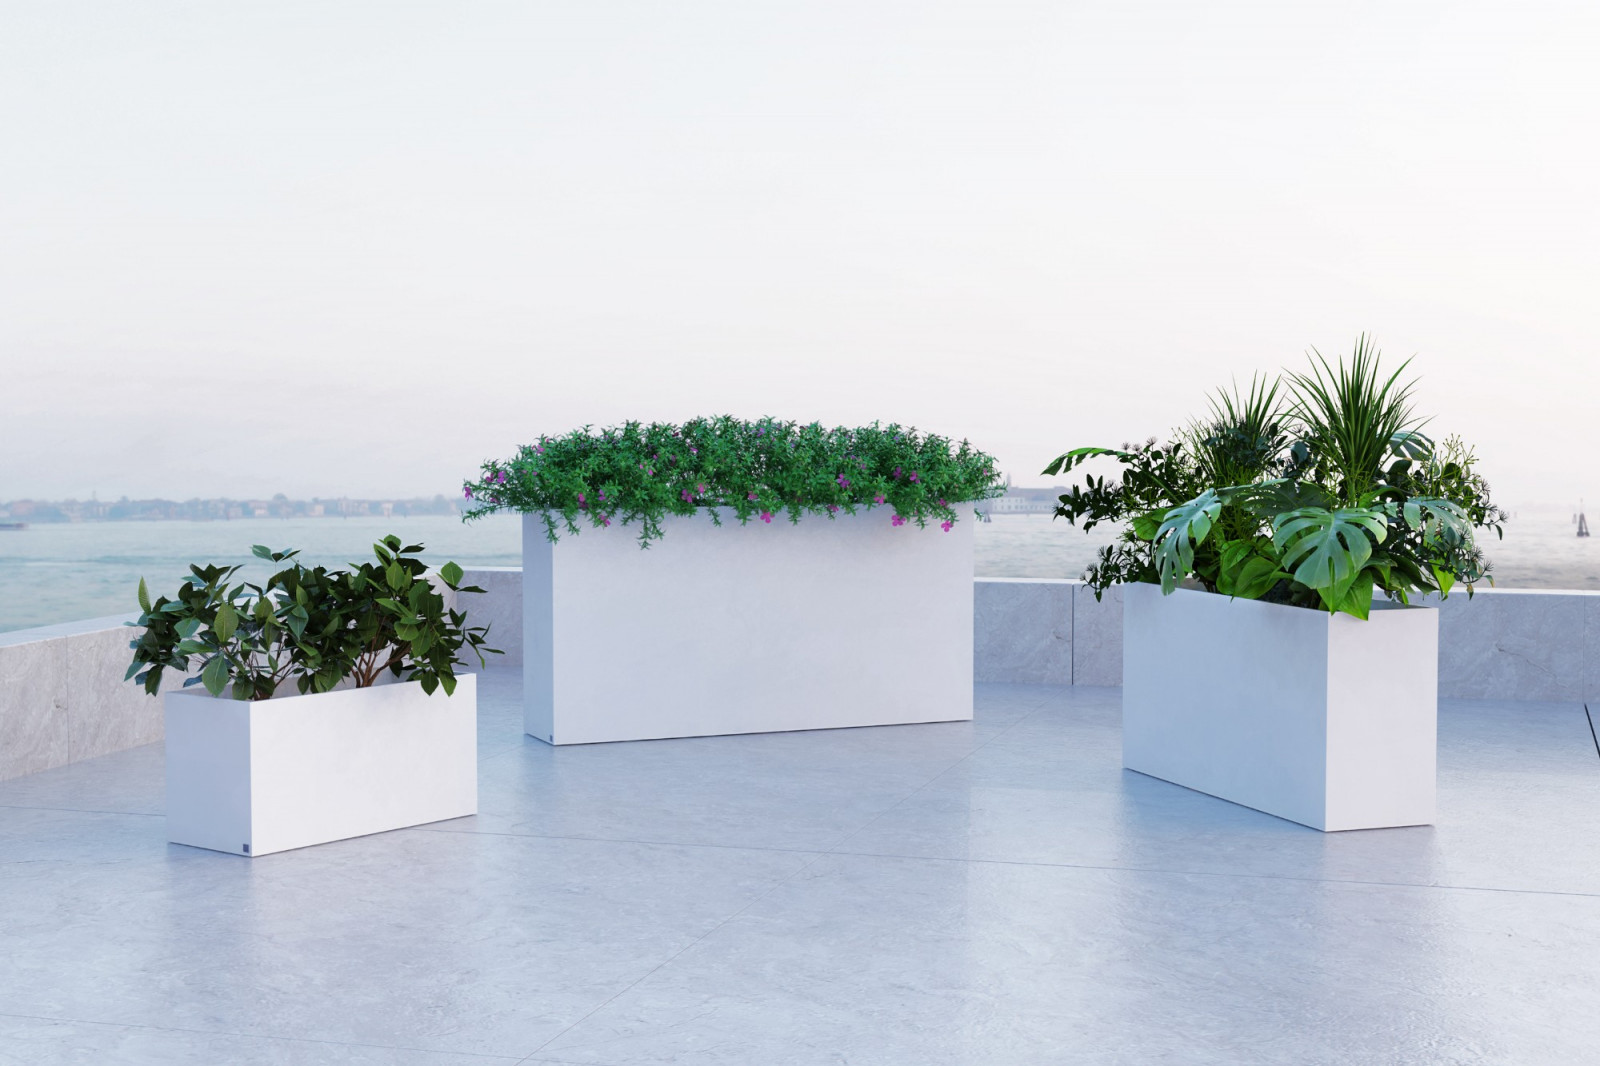 planter-outdoor-terrace-pool-garden-elegant-modern-white-quadra-gansk-0-2382-1600-1400-100